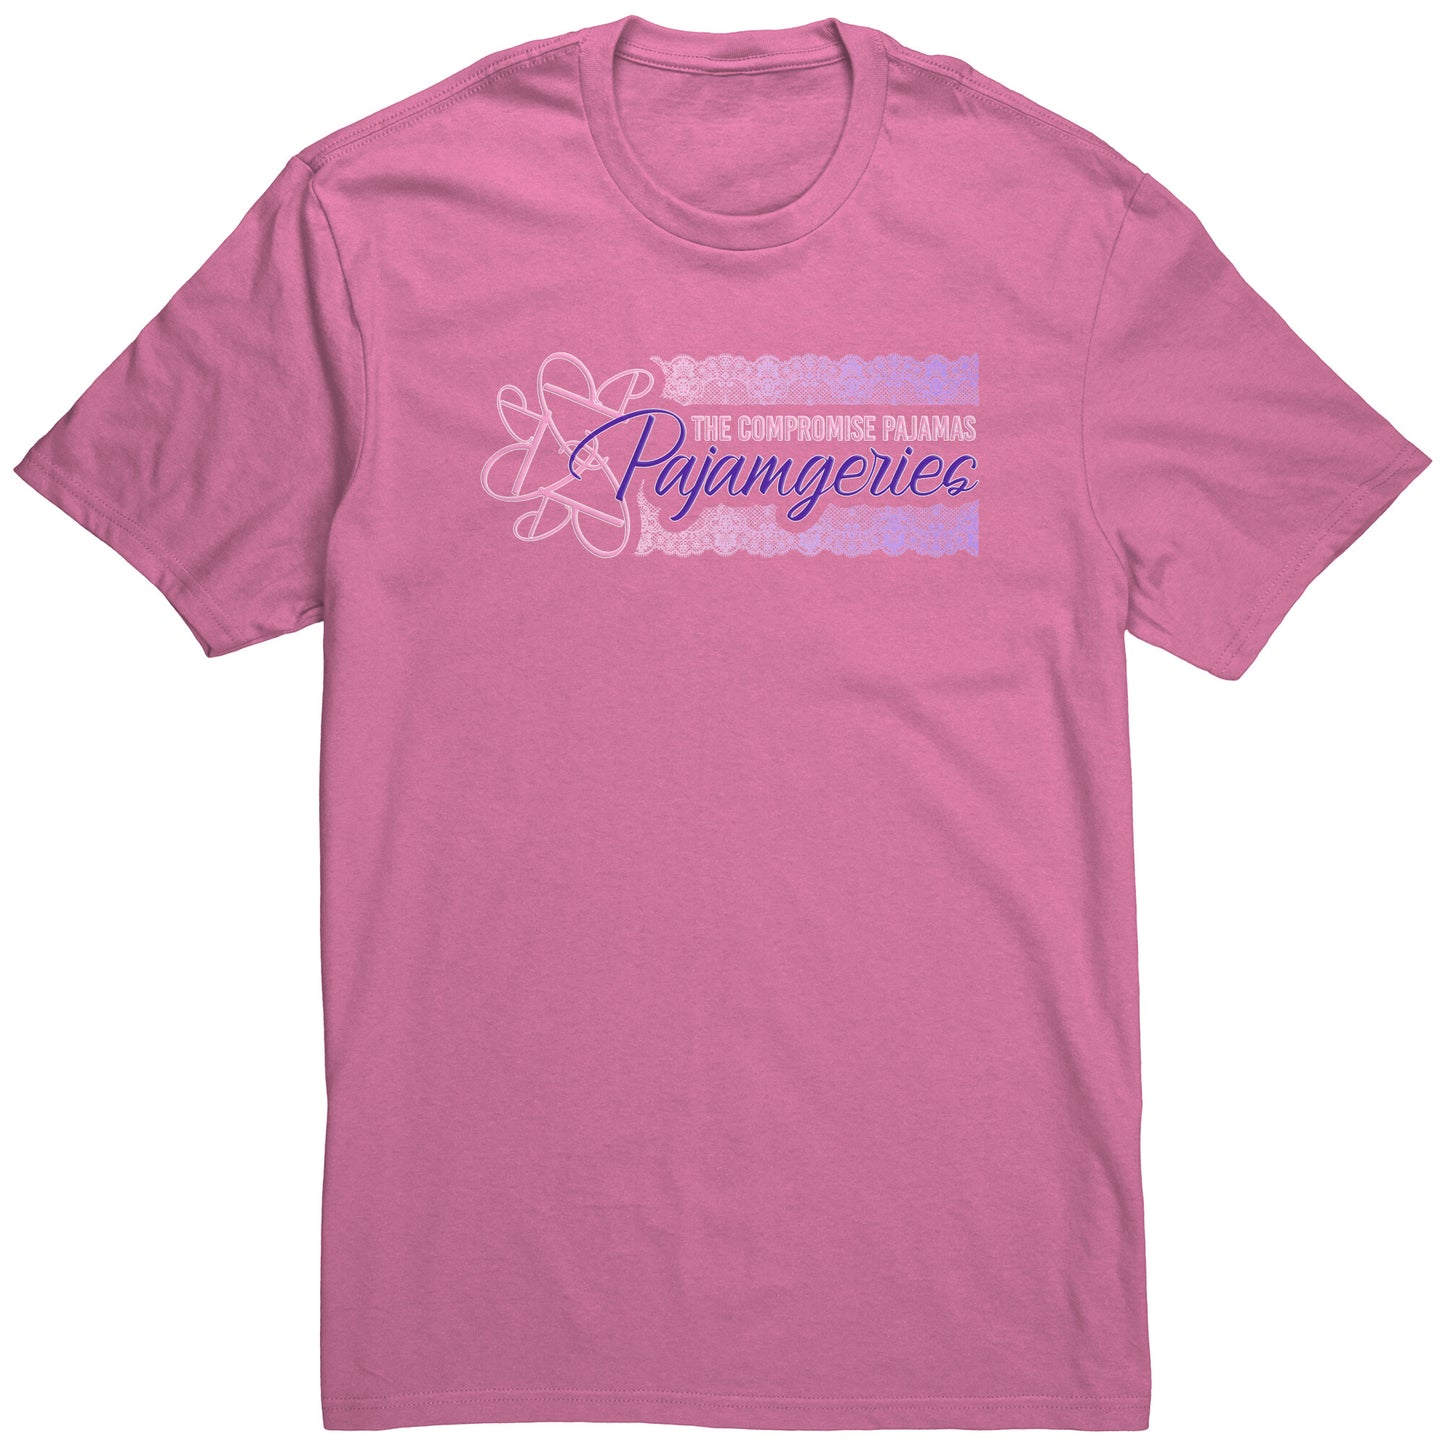 Pajamgeries - The Compromise Pajamas Logo Tee